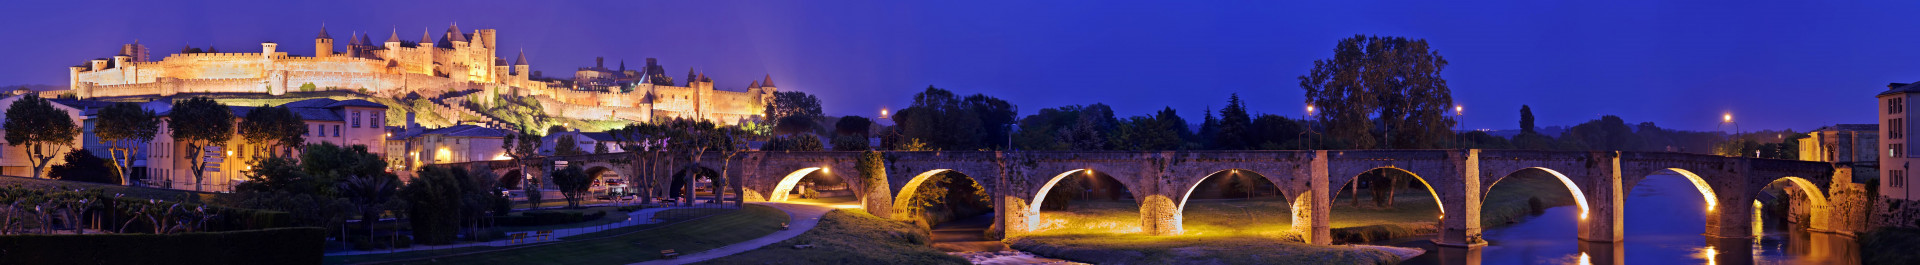 carcassonne cité de nuit